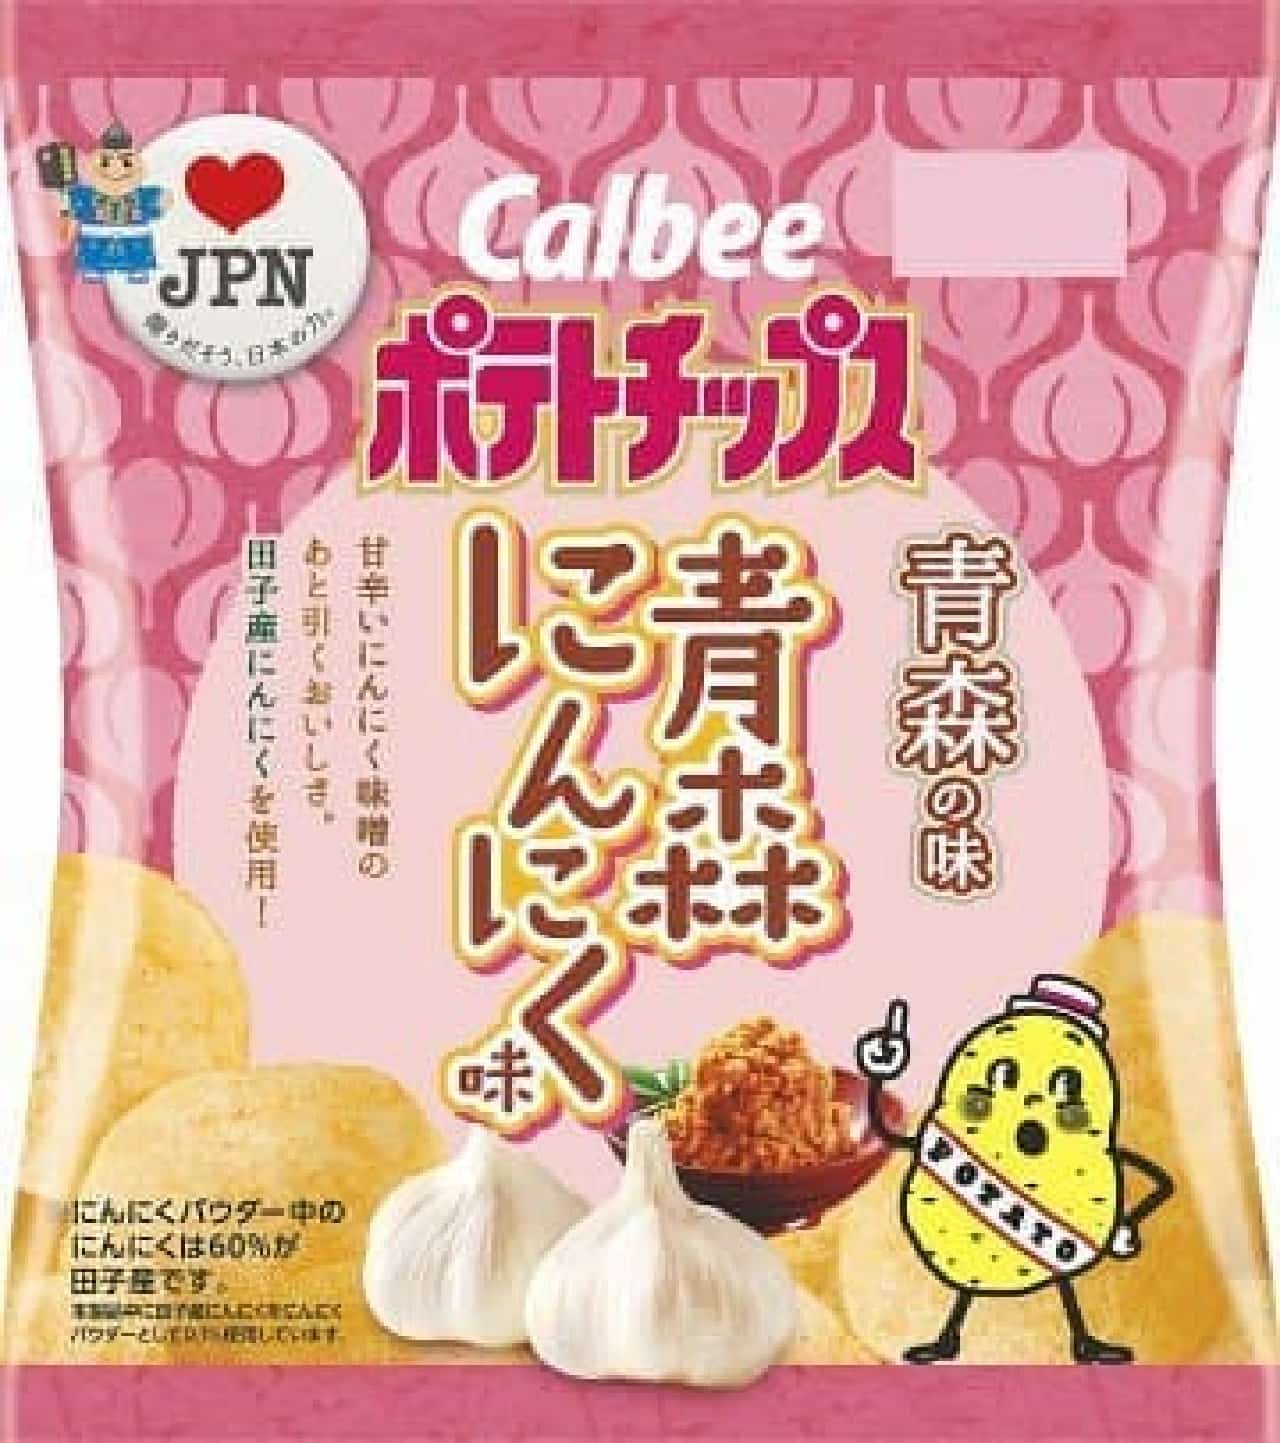 Potato chips Aomori garlic flavor